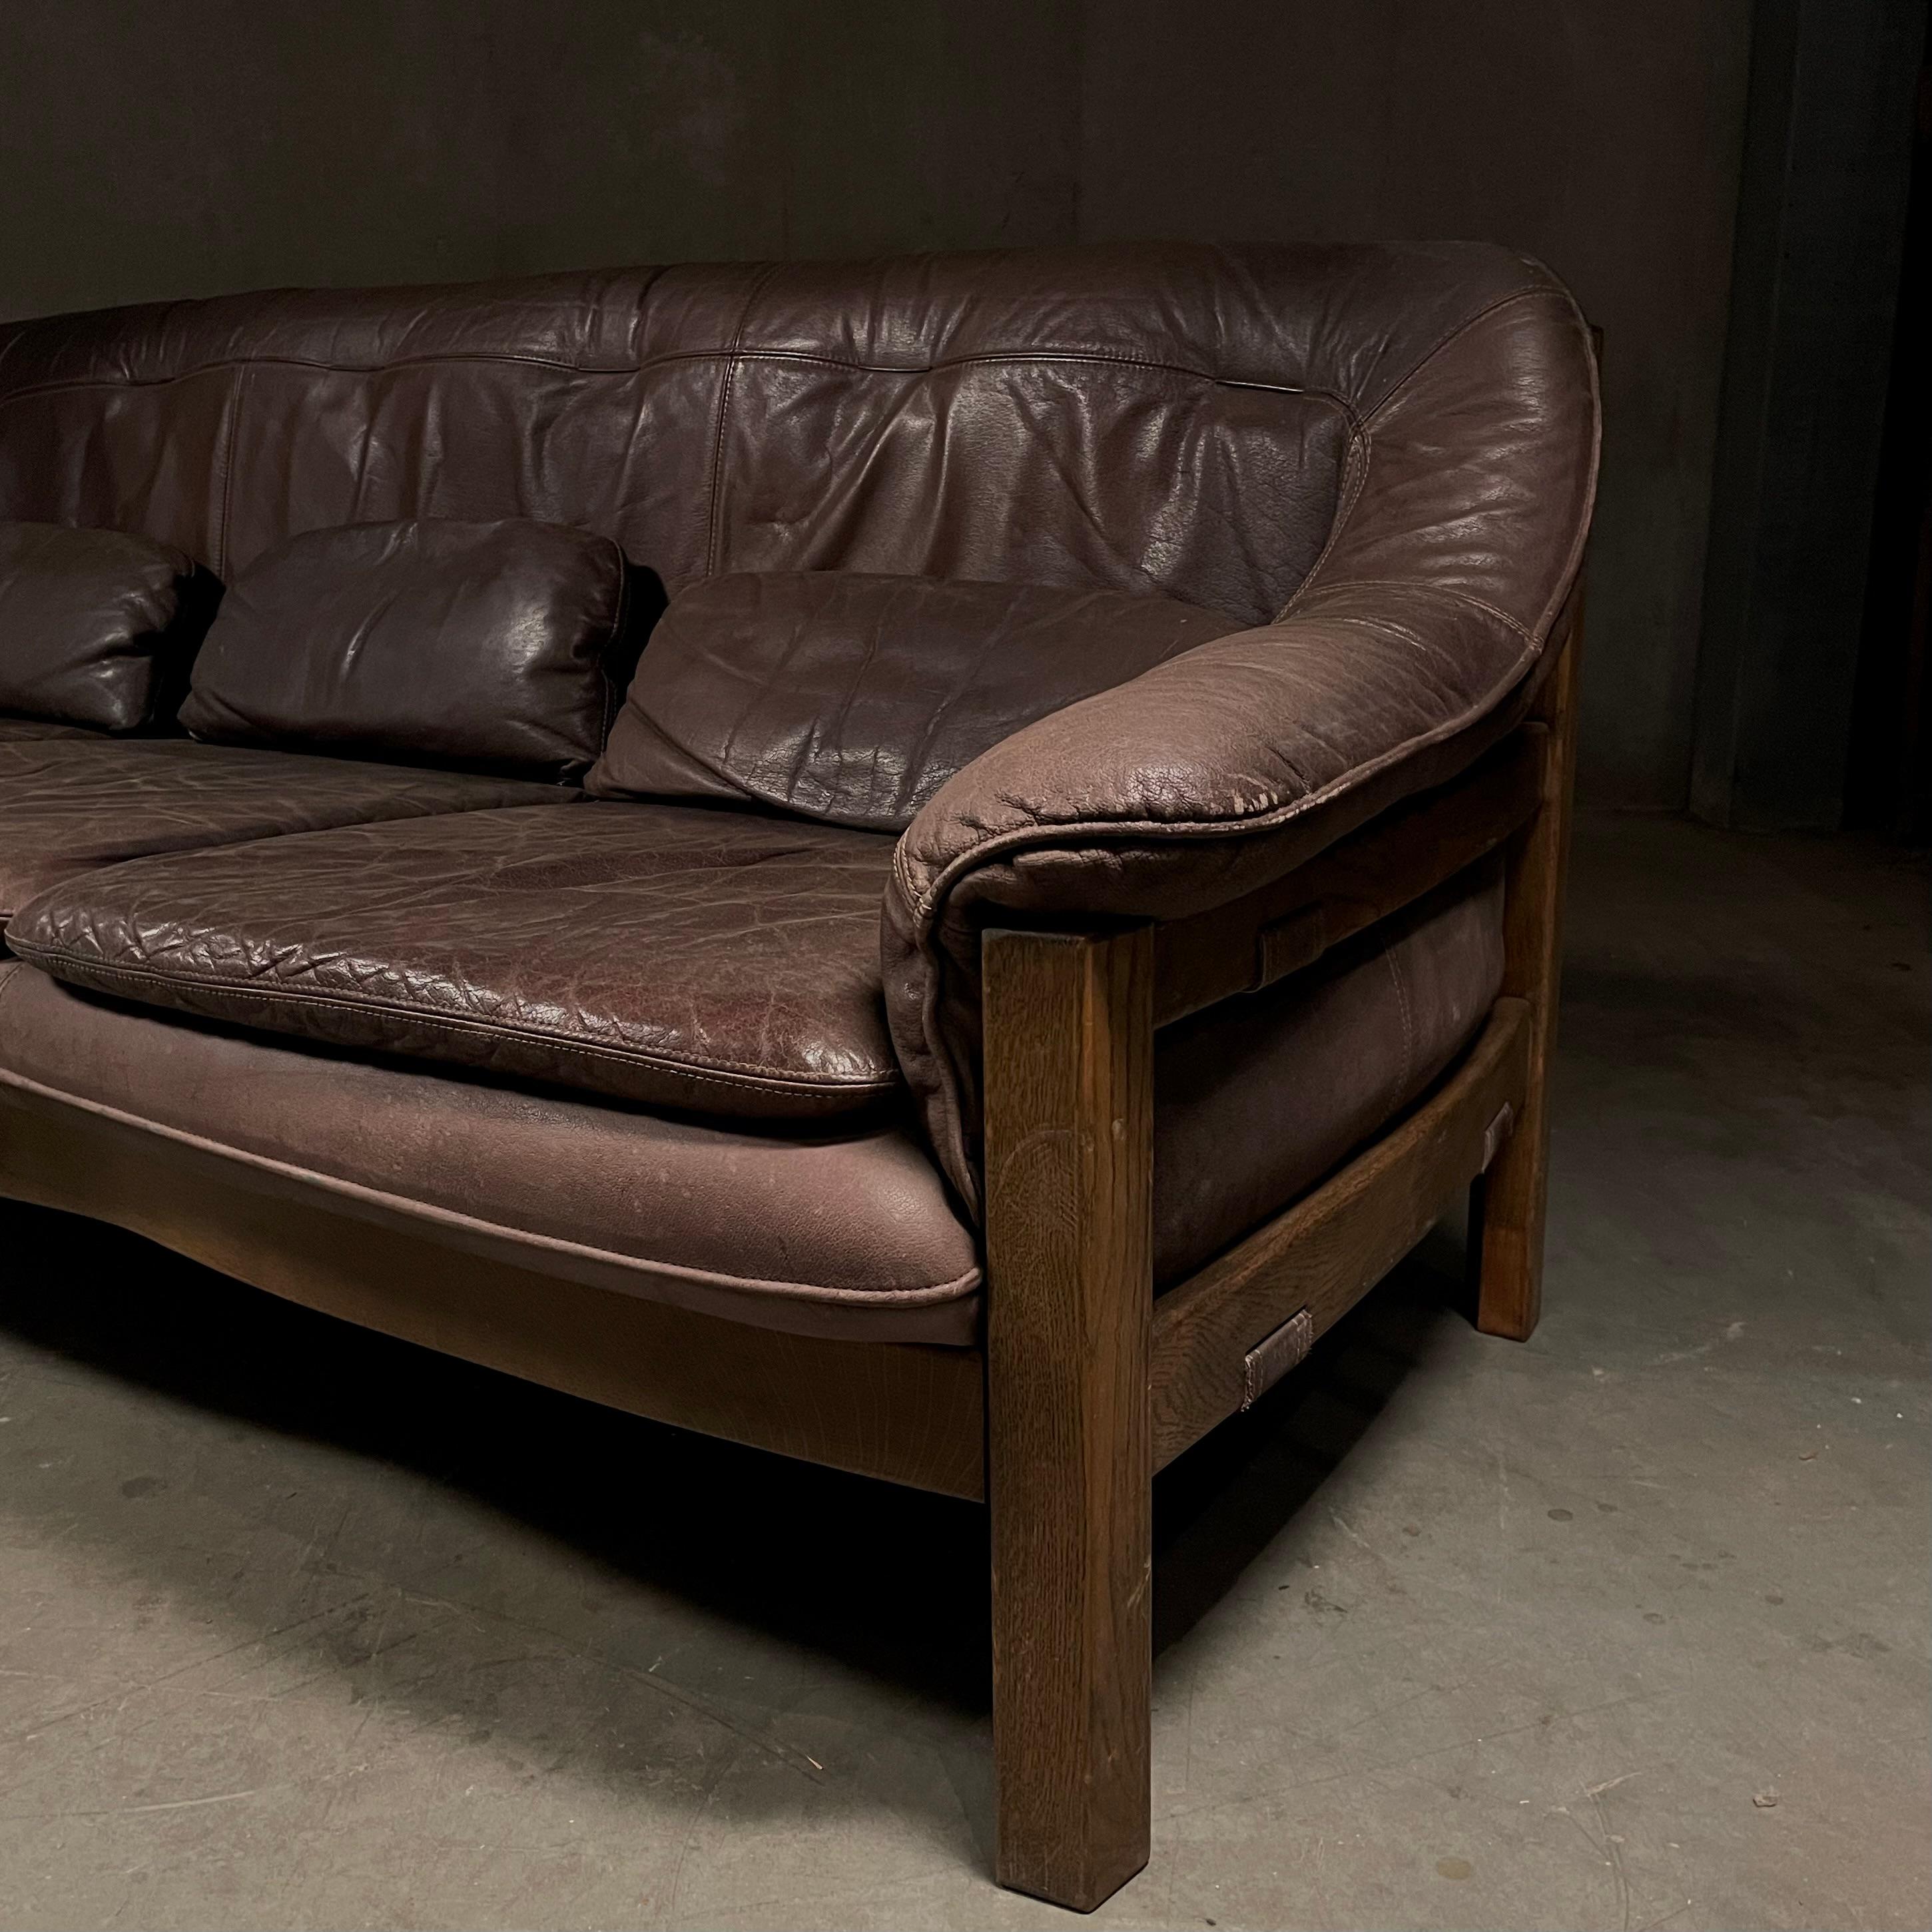 Un canapé en cuir de grande qualité fabriqué en Allemagne  avec un beau bois massif  cadre .  Trouvée au Texas, cette pièce a été importée directement d'Allemagne.  et  est solide, ne s'affaisse pas et est extrêmement confortable. 

Fabriqué par